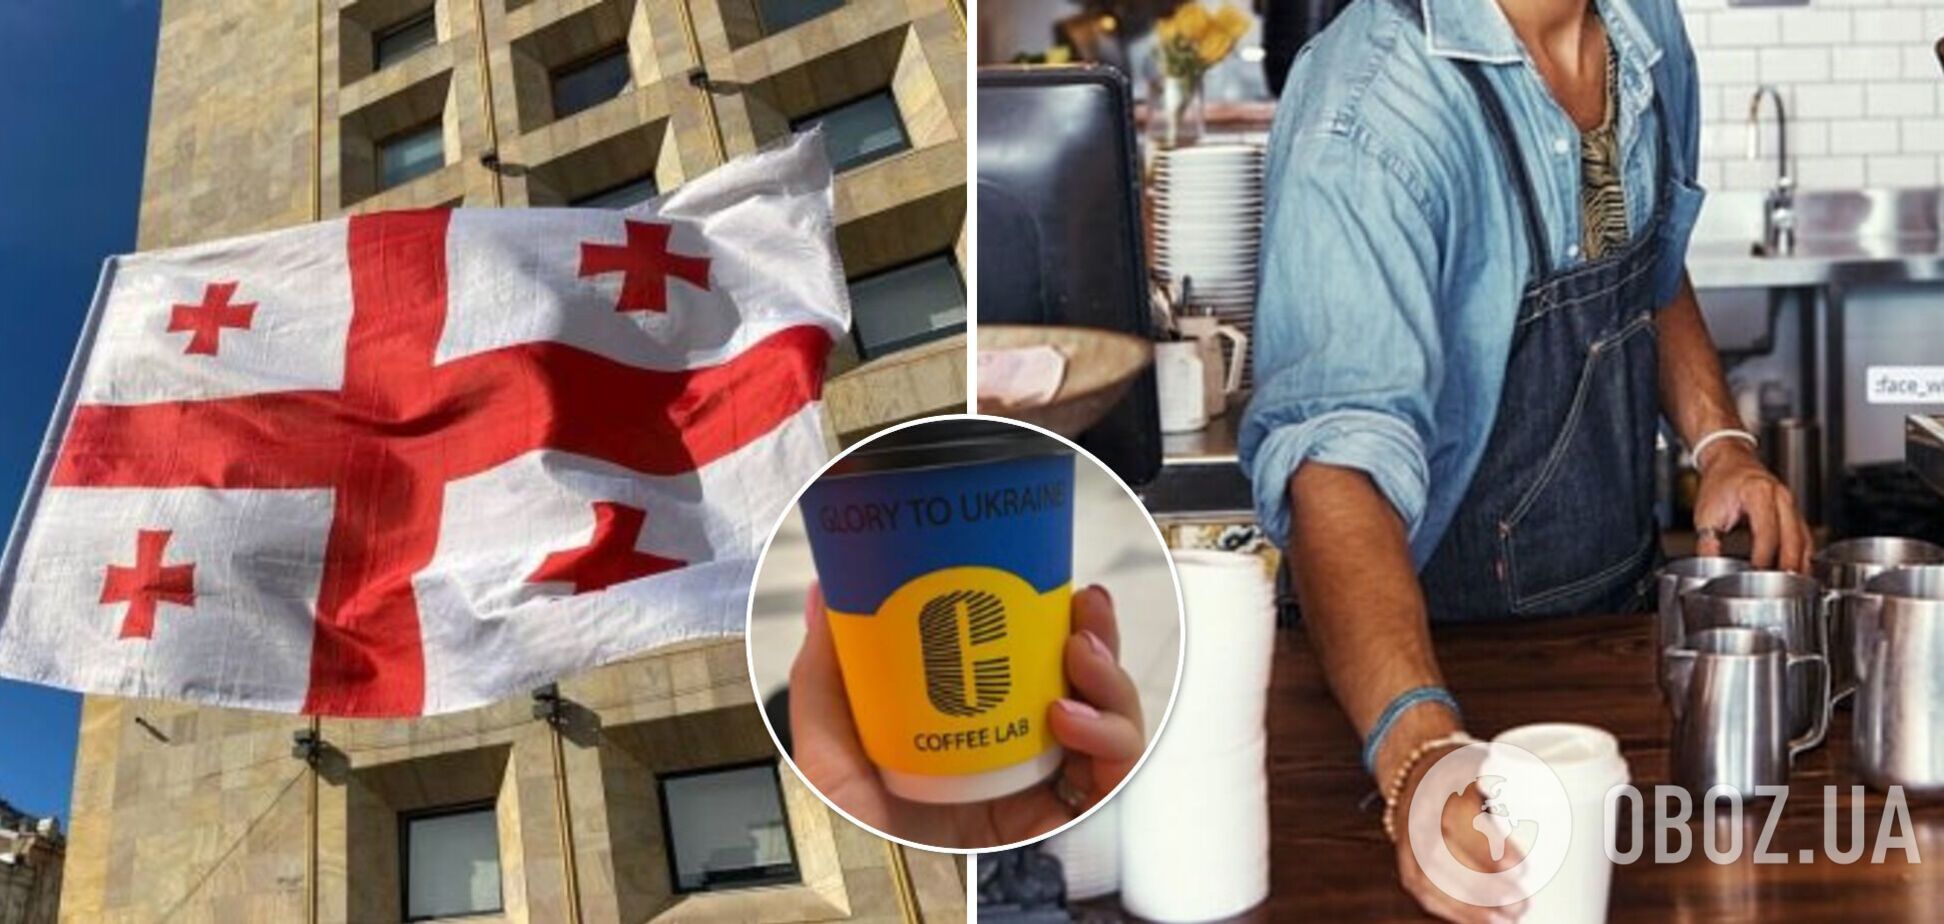 В Грузии туристке из России выдали кофе в сине-желтом стаканчике с надписью 'Русский военный корабль, иди на...'